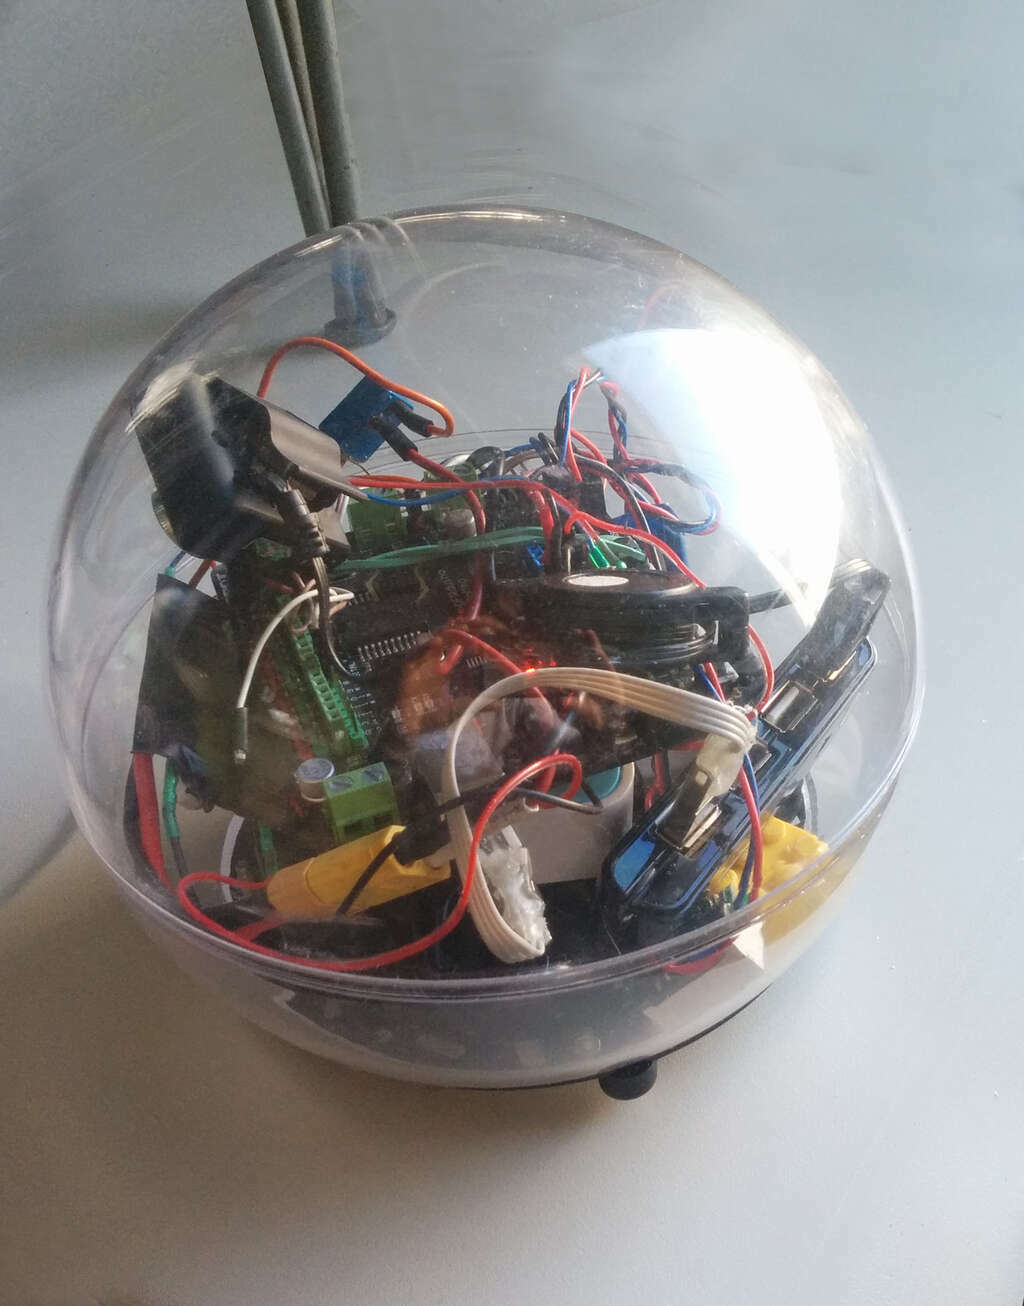 Samosterowny Robocik zbudowany w oparciu o arduino